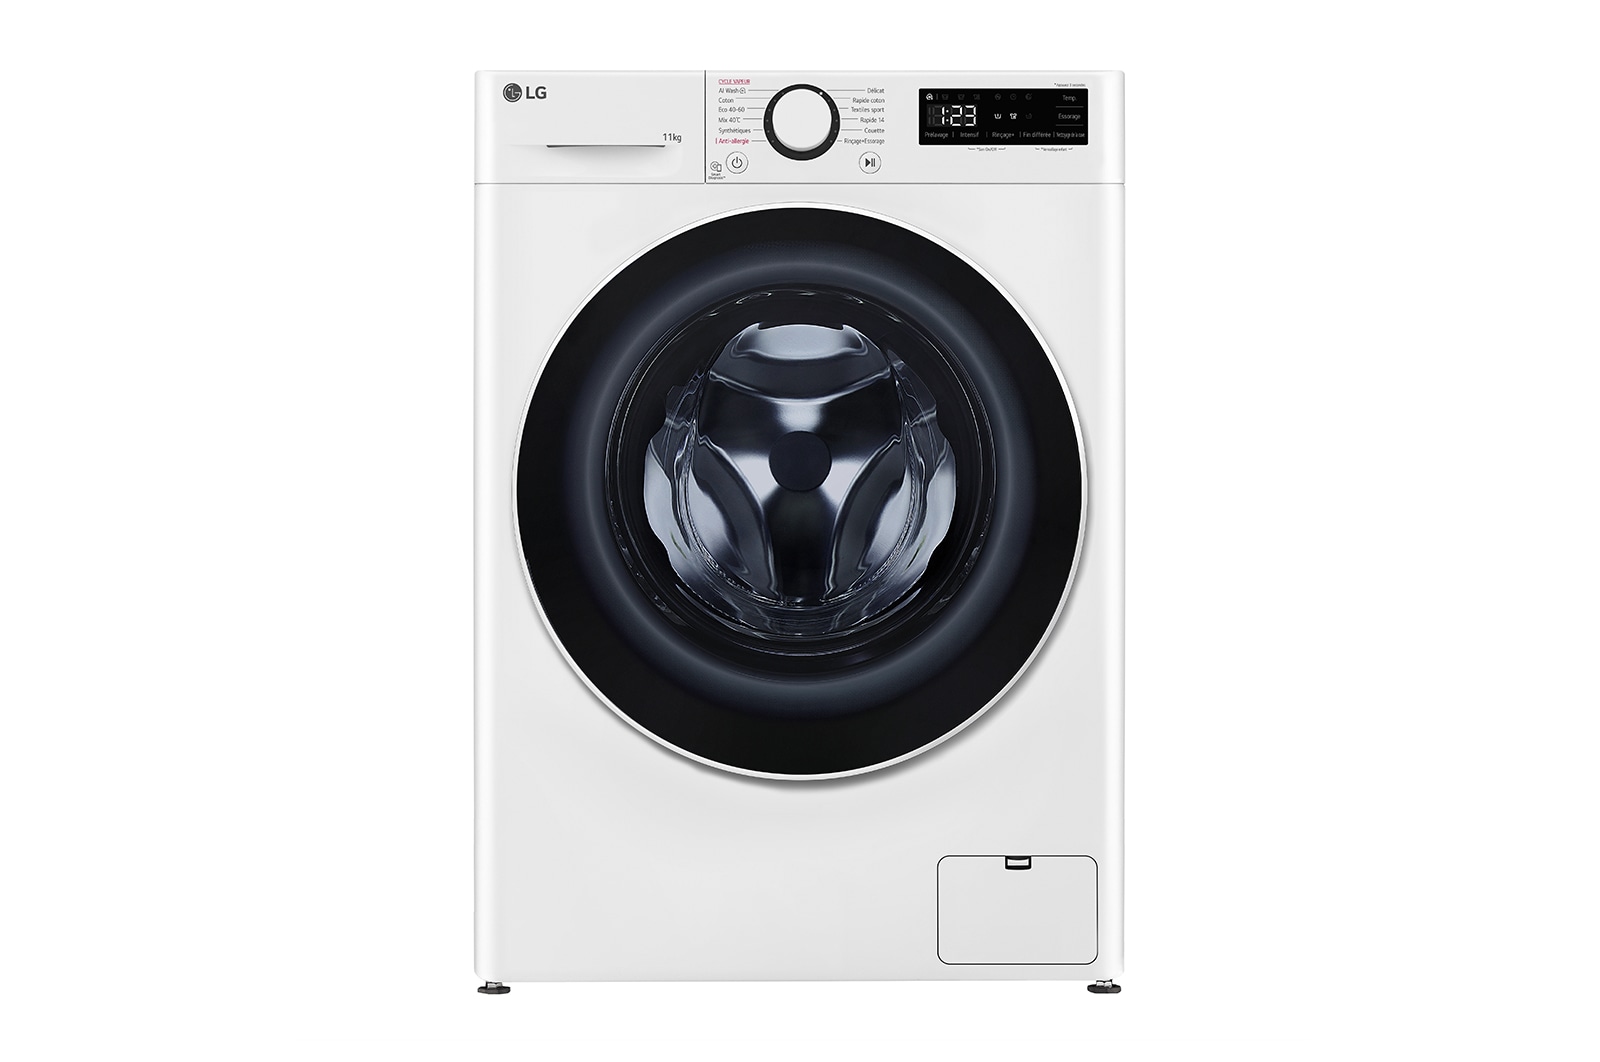 Filets de lavage multi-format pour linge délicat : Laundry Solutions